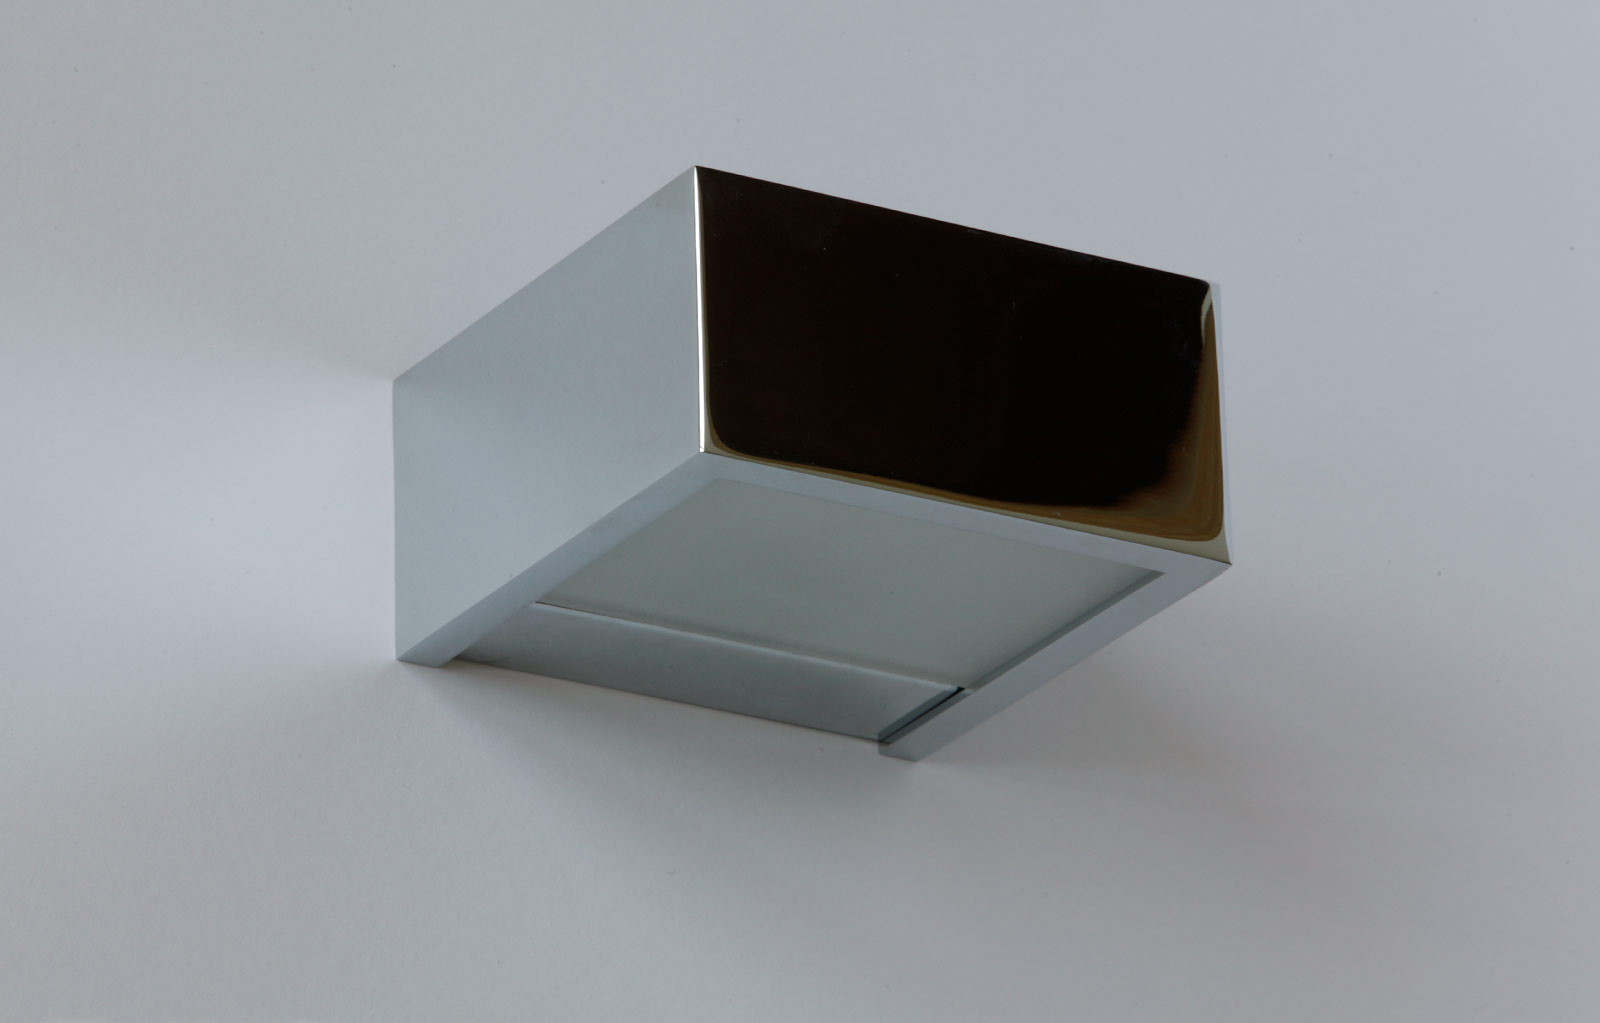 QUAD Wandleuchte oder Spiegelleuchte Bad: Badezimmer-Wandfluter, Chrom, Modell 1 mit 10 cm Breite